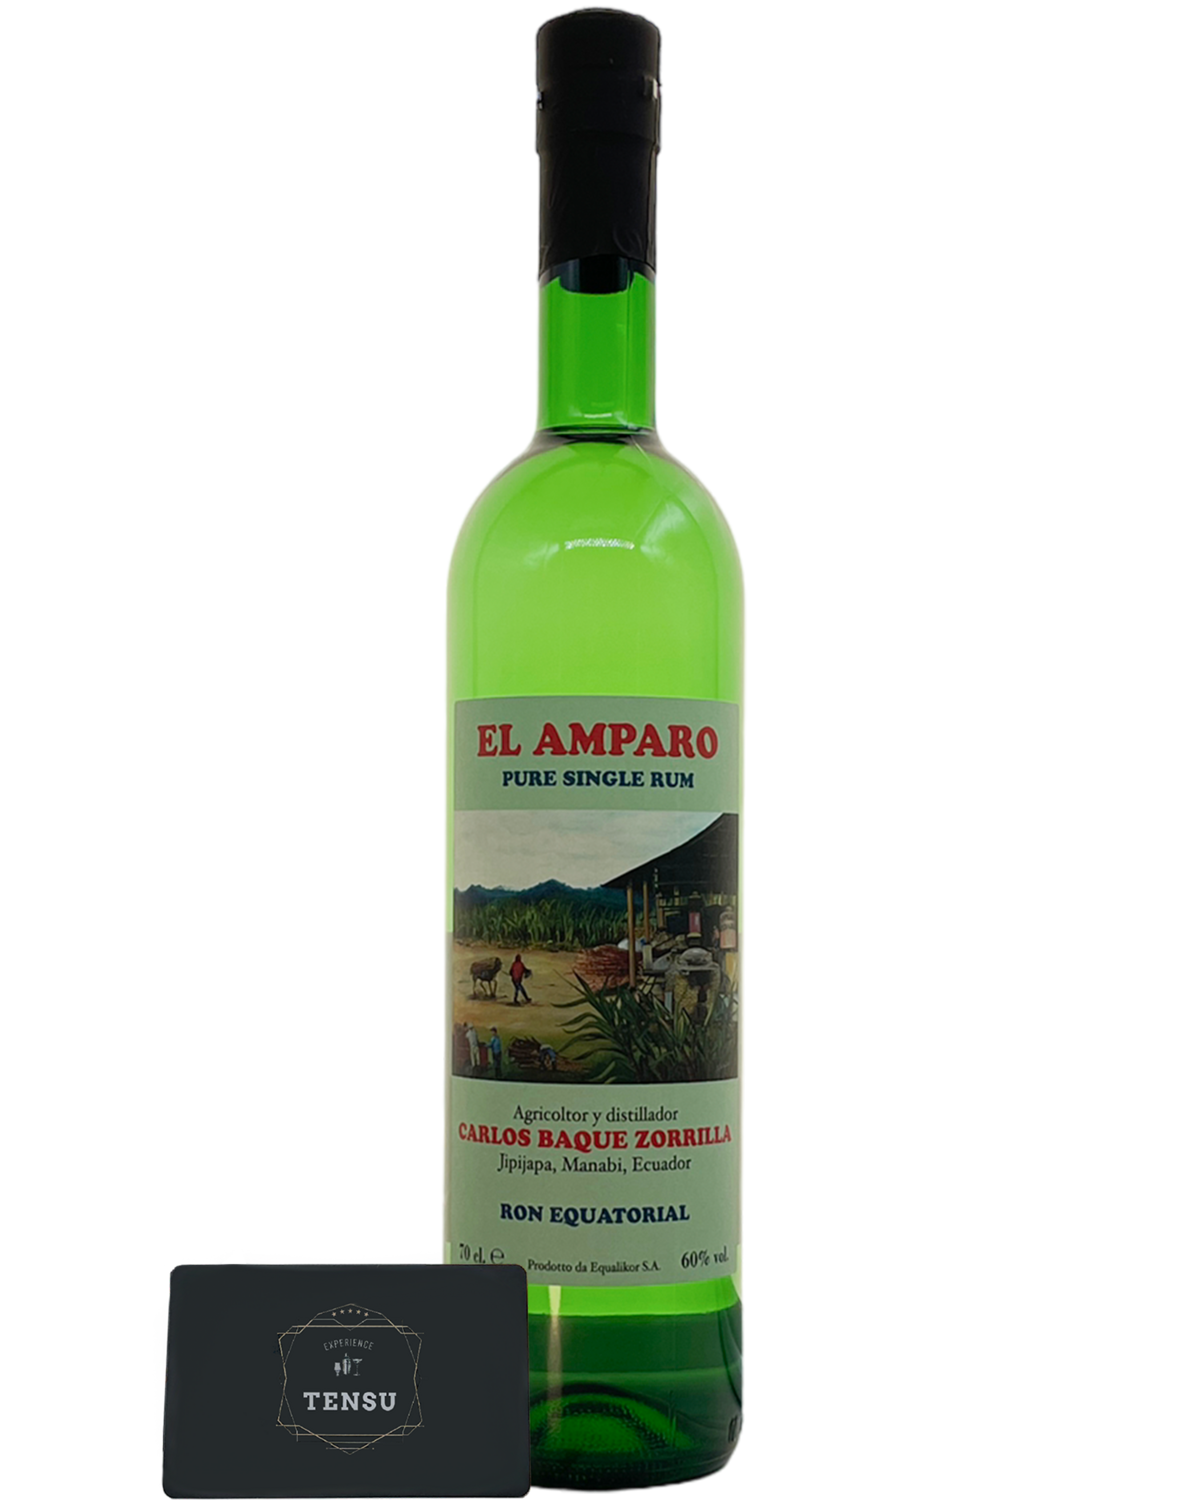 El Amparo​ Ecuadorian Pure Single Rum 60.0 "OB"